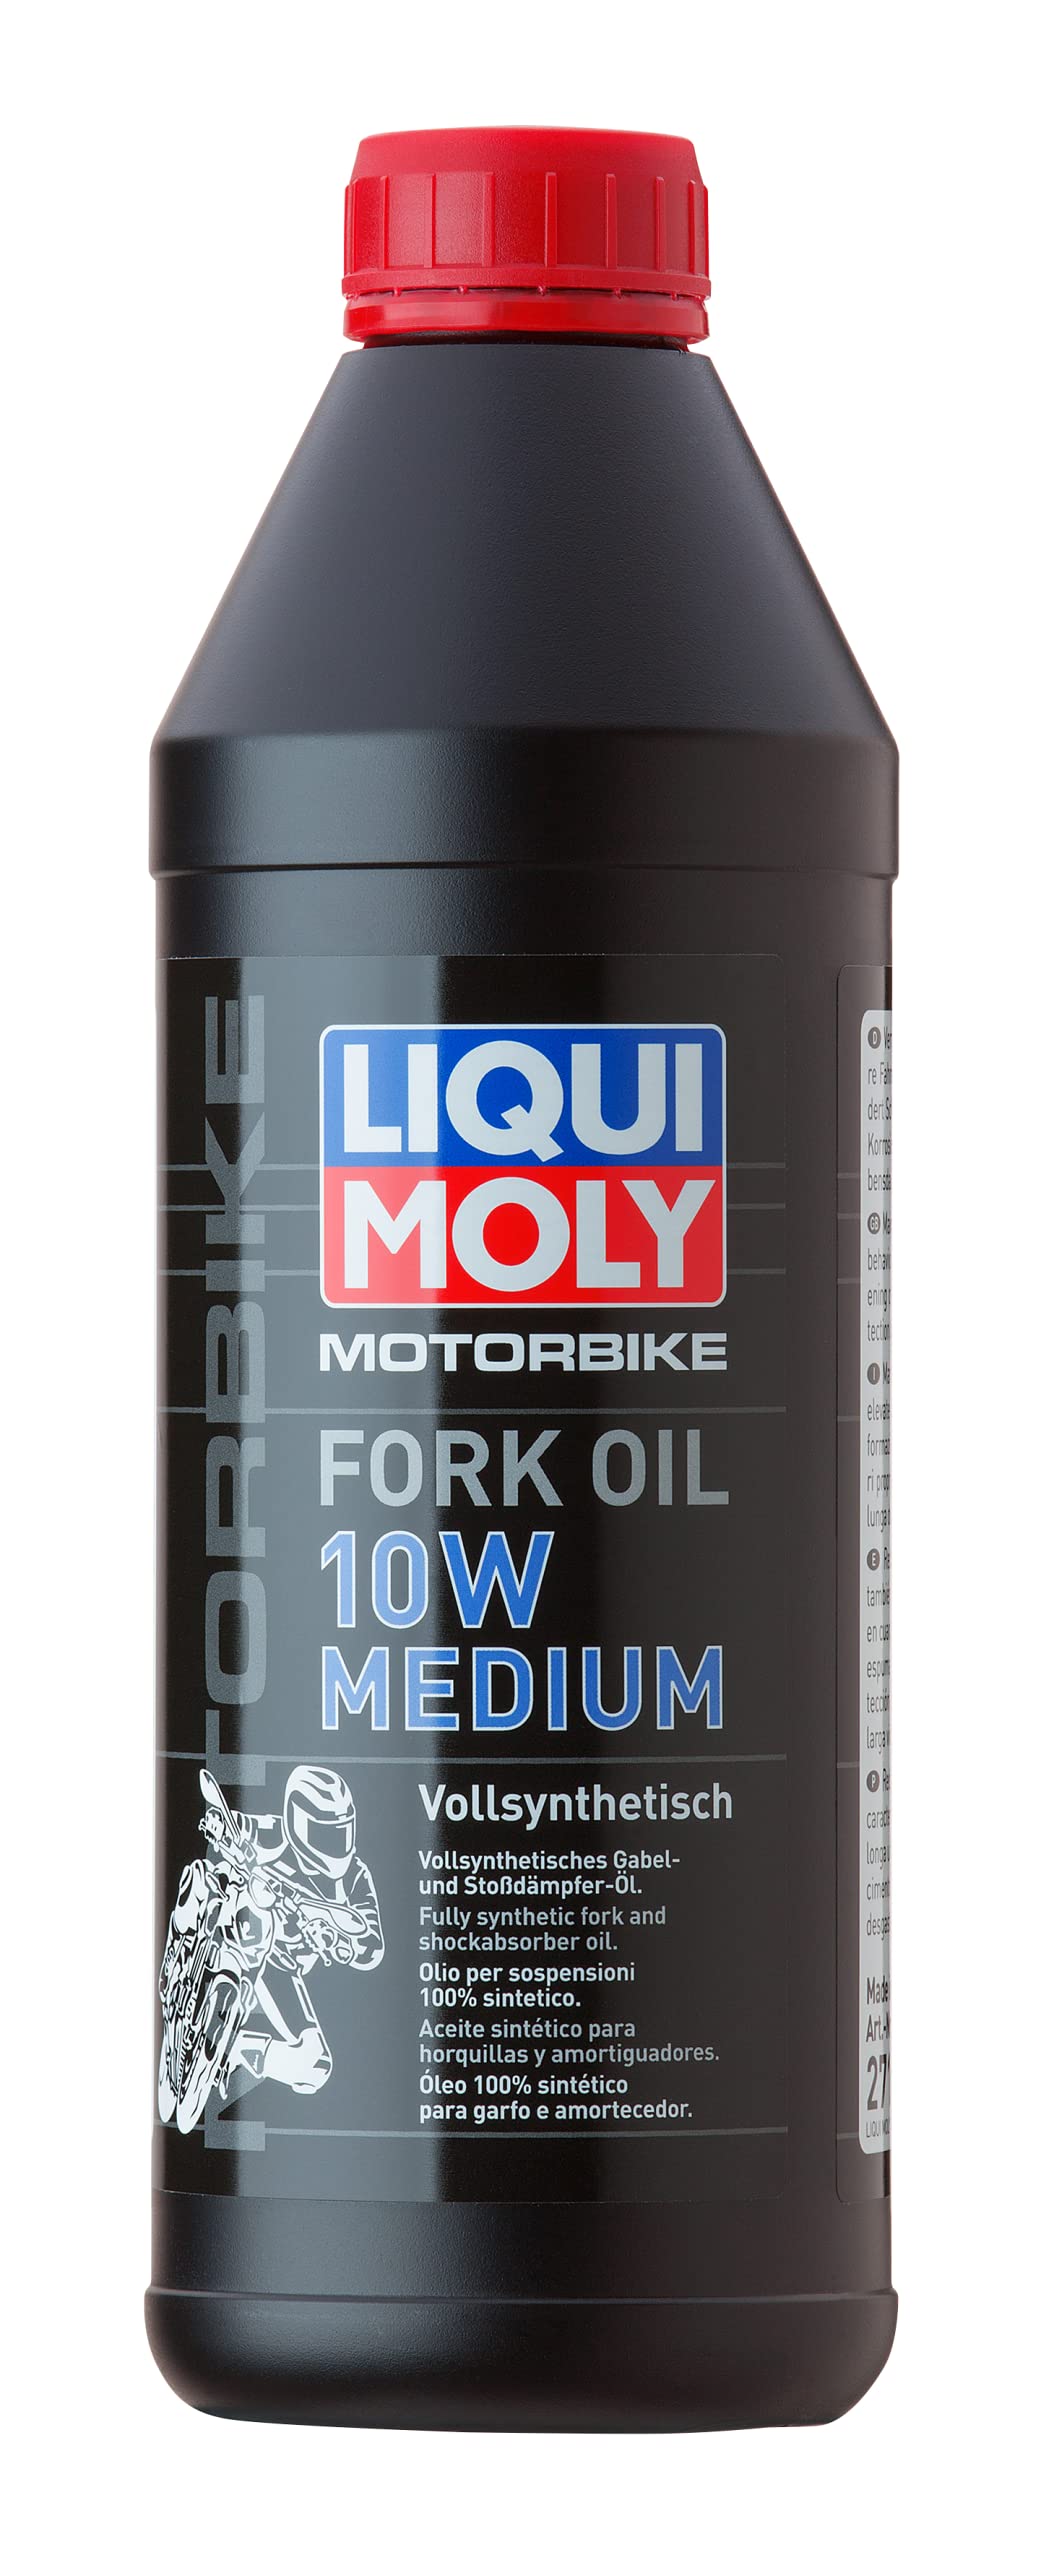 LIQUI MOLY Motorbike Fork Oil 10W medium | 1 L | Motorrad Gabelöl | Art.-Nr.: 2715 von Liqui Moly